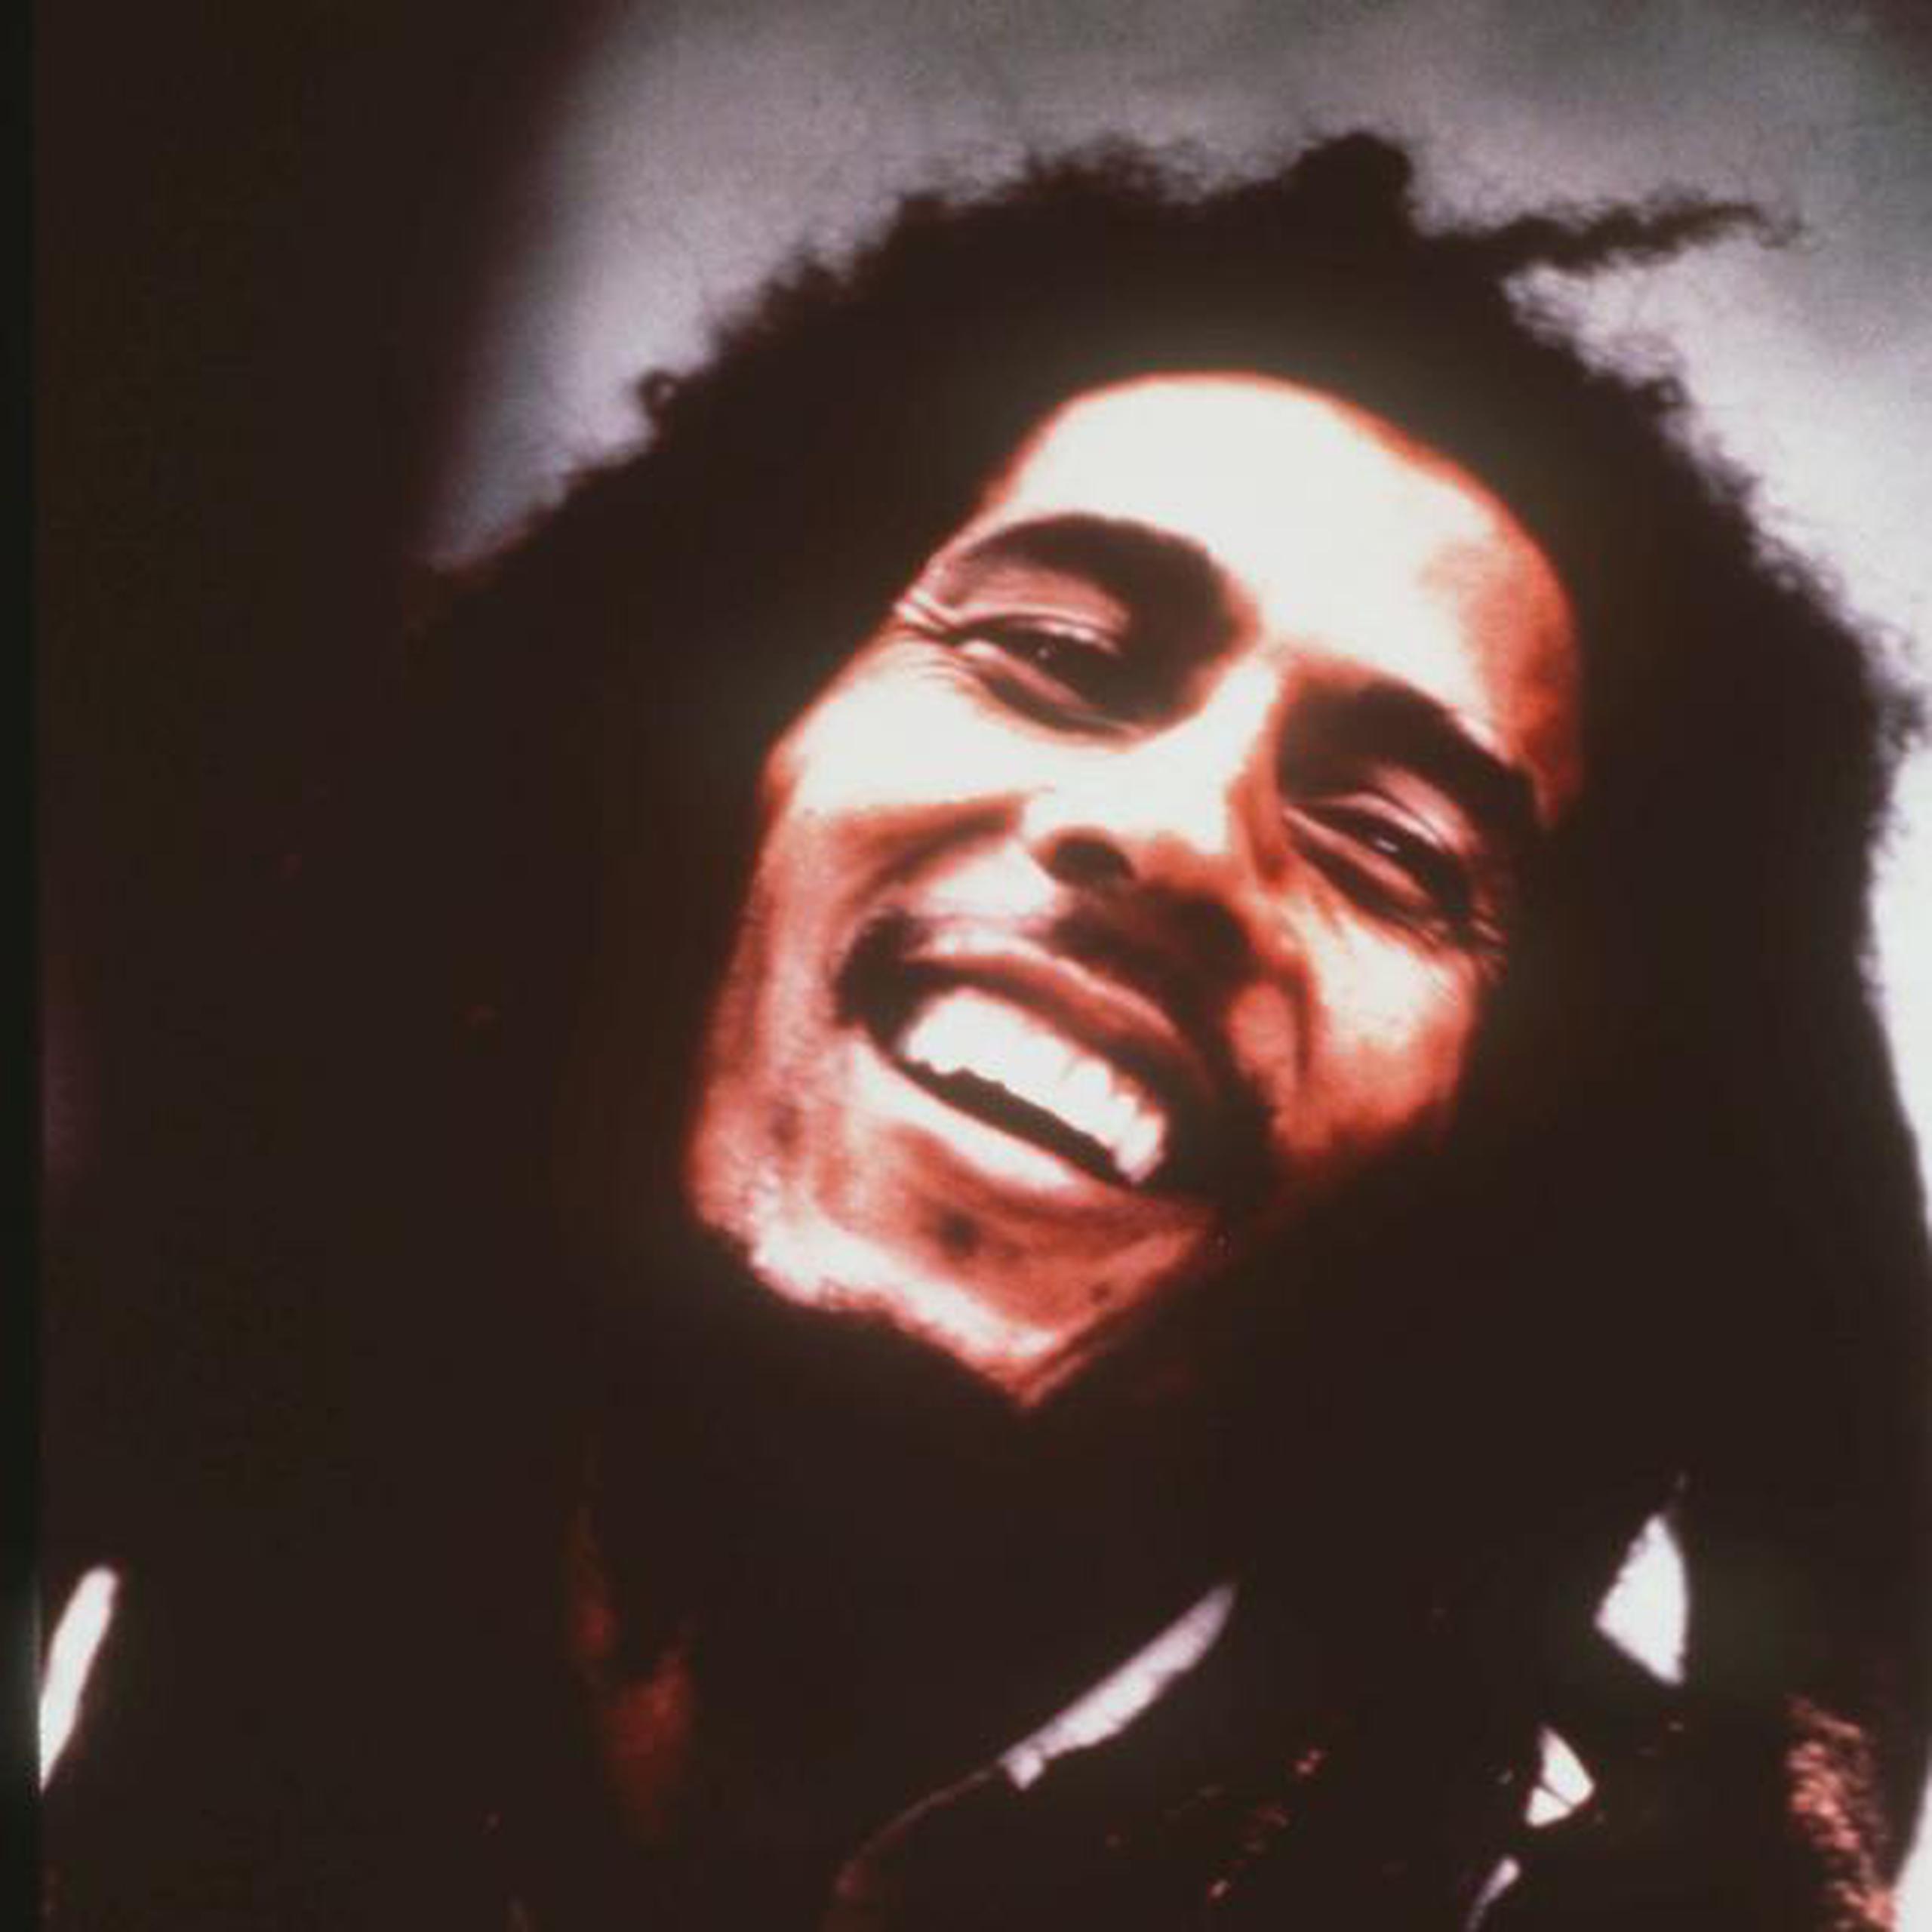 Bob Marley murió en 1981 estando en la cima de la fama. (Archivo)